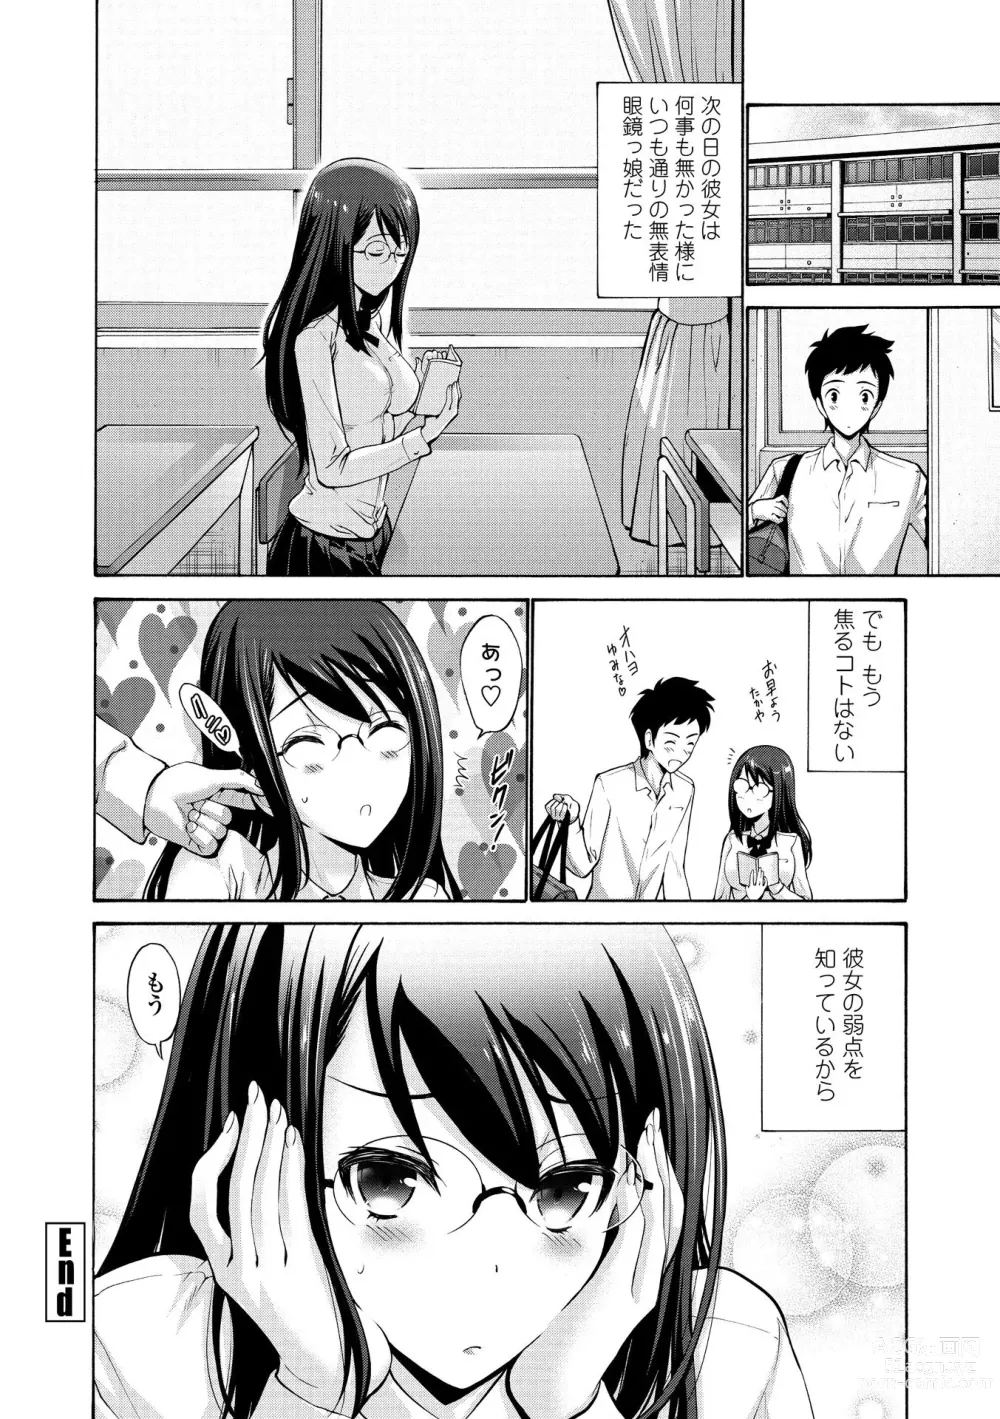 Page 206 of manga Imouto no Naka wa Ii mono da